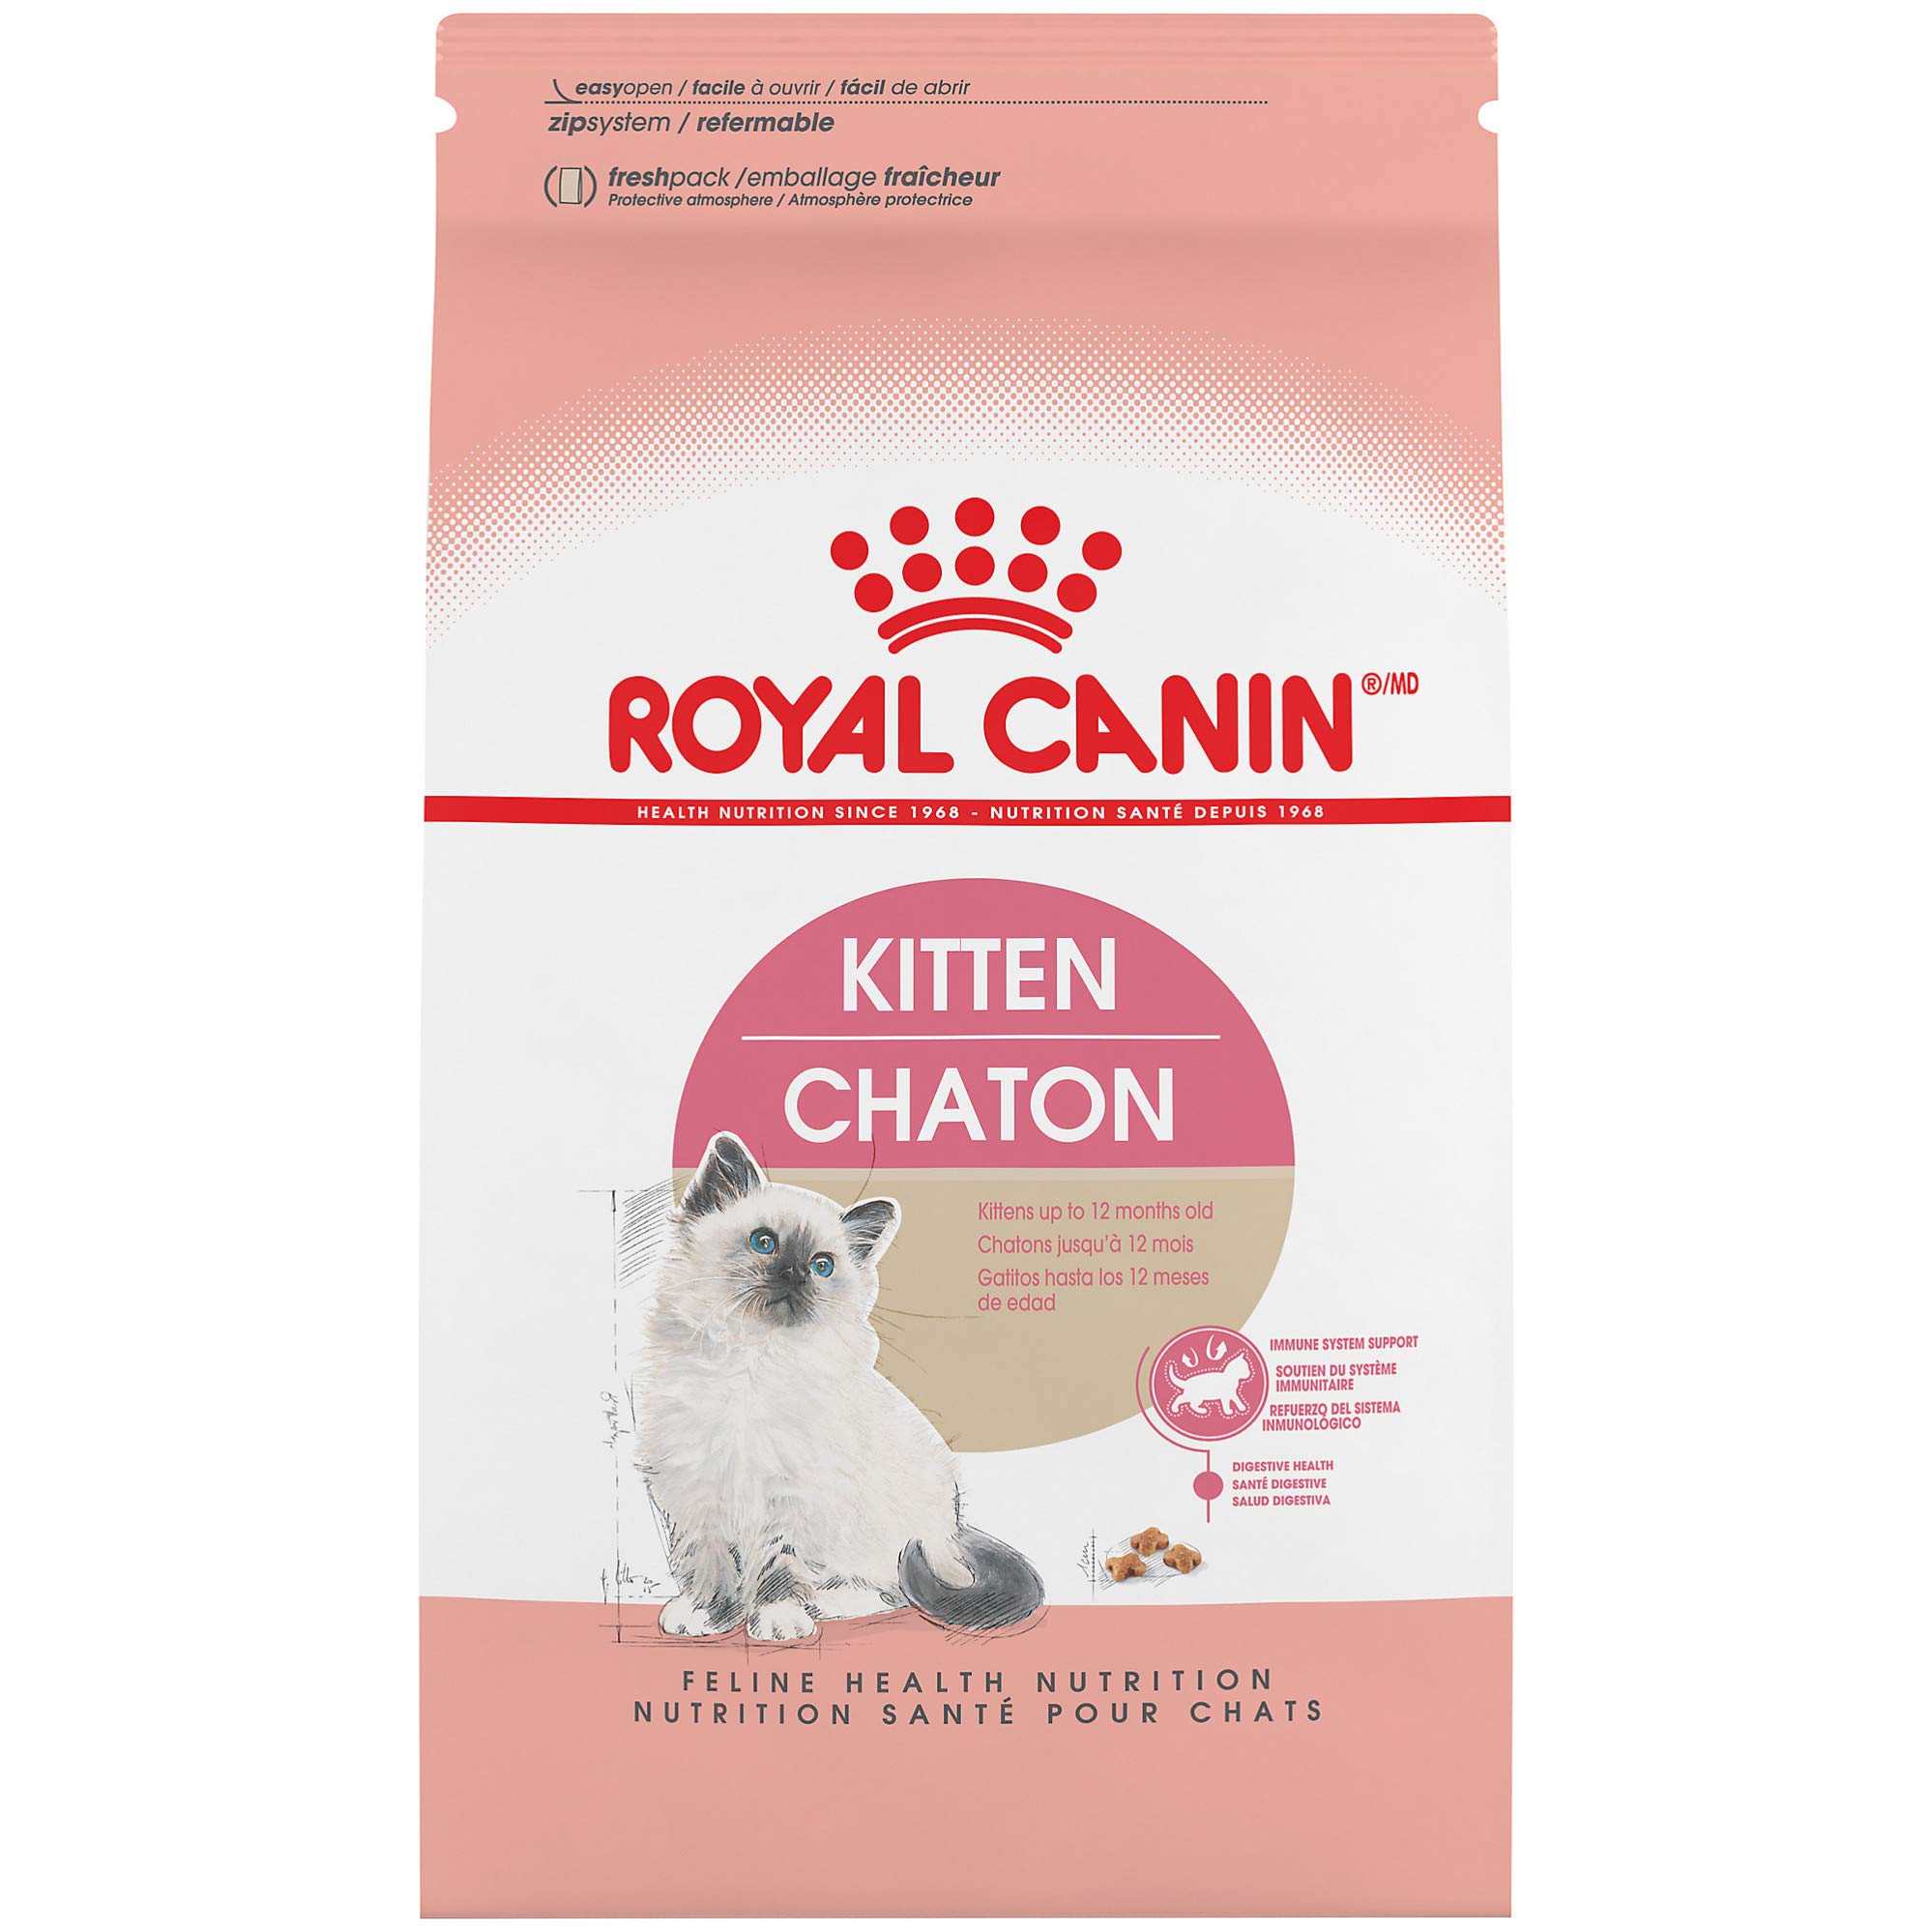 Royal Canin طعام القطط الجاف للقطط القطط الصحية والتغذية